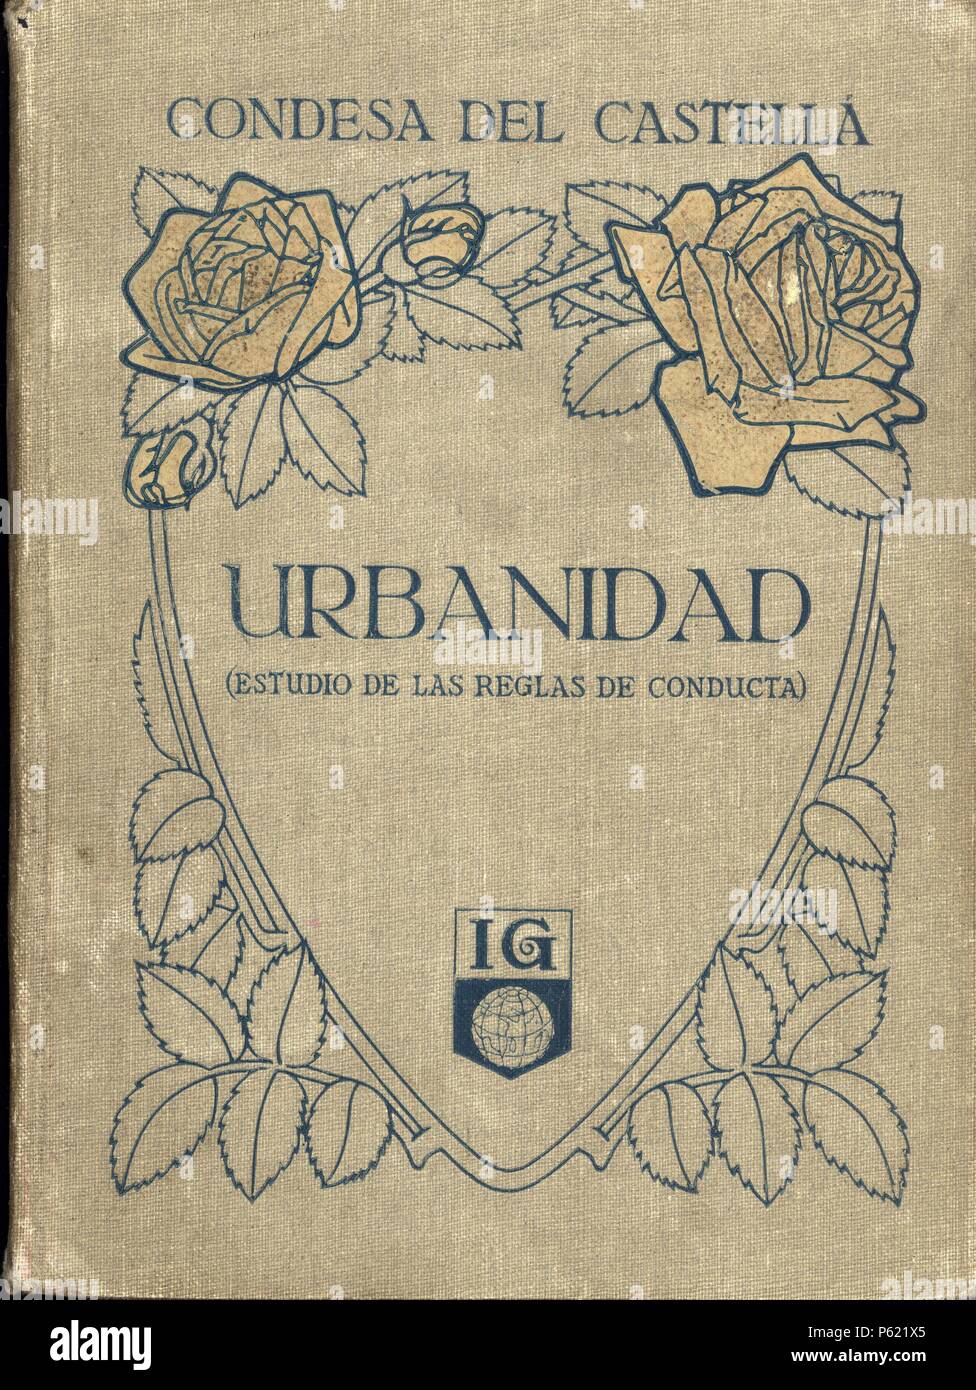 Libro de texto. Urbanidad, de la Condesa del Castellá. Imprenta Gráfica Seix Barral, Barcelona, 1916. Stock Photo